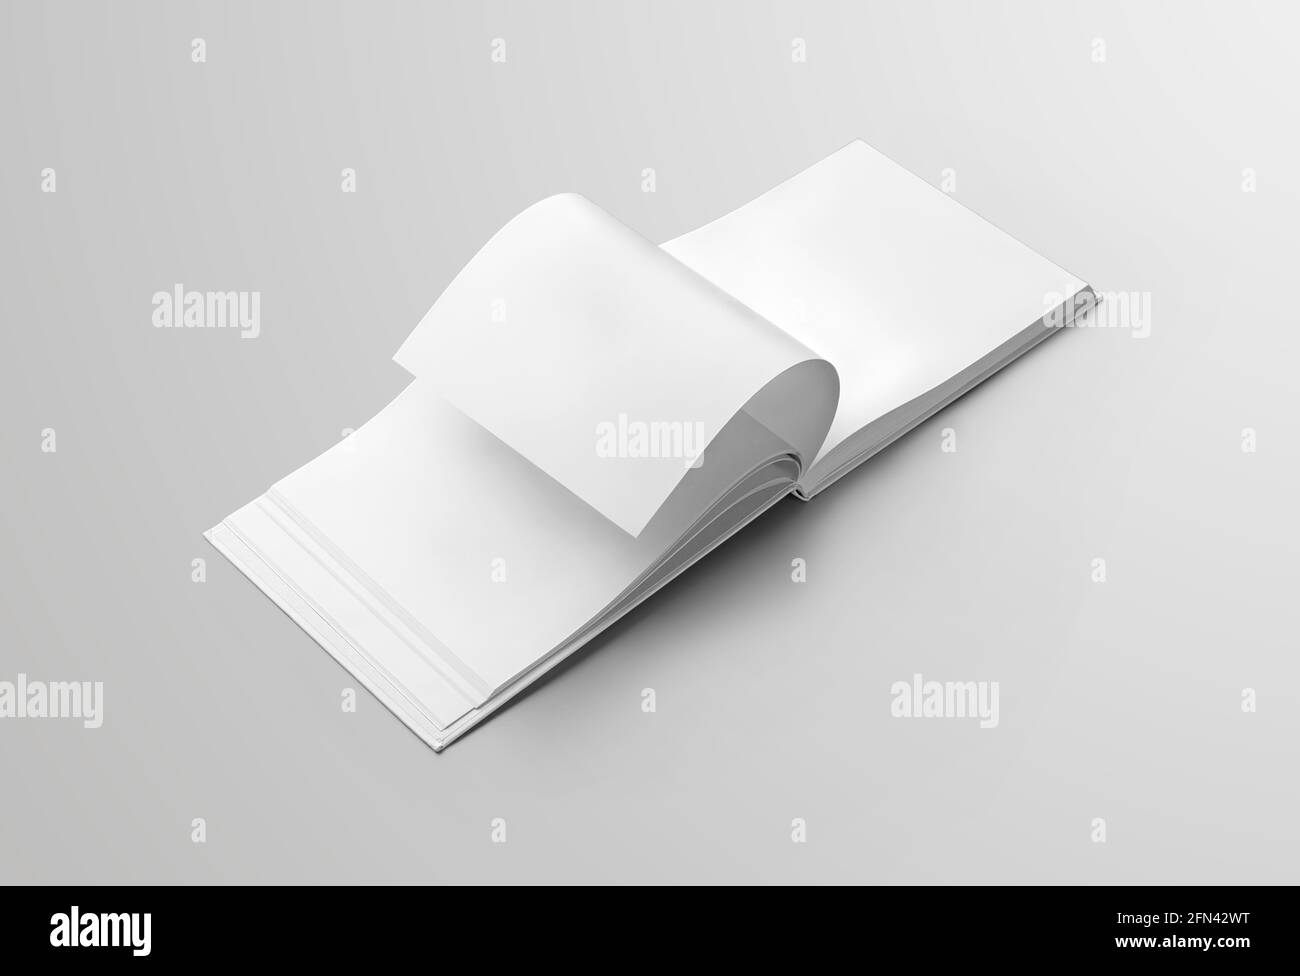 Nachbau eines leeren, offenen Buches mit Seitenumdrehung für die Präsentationsgestaltung im offenen Landschaftsformat. Hardcover Objekt Vorlage mit realistischen lesen Stockfoto